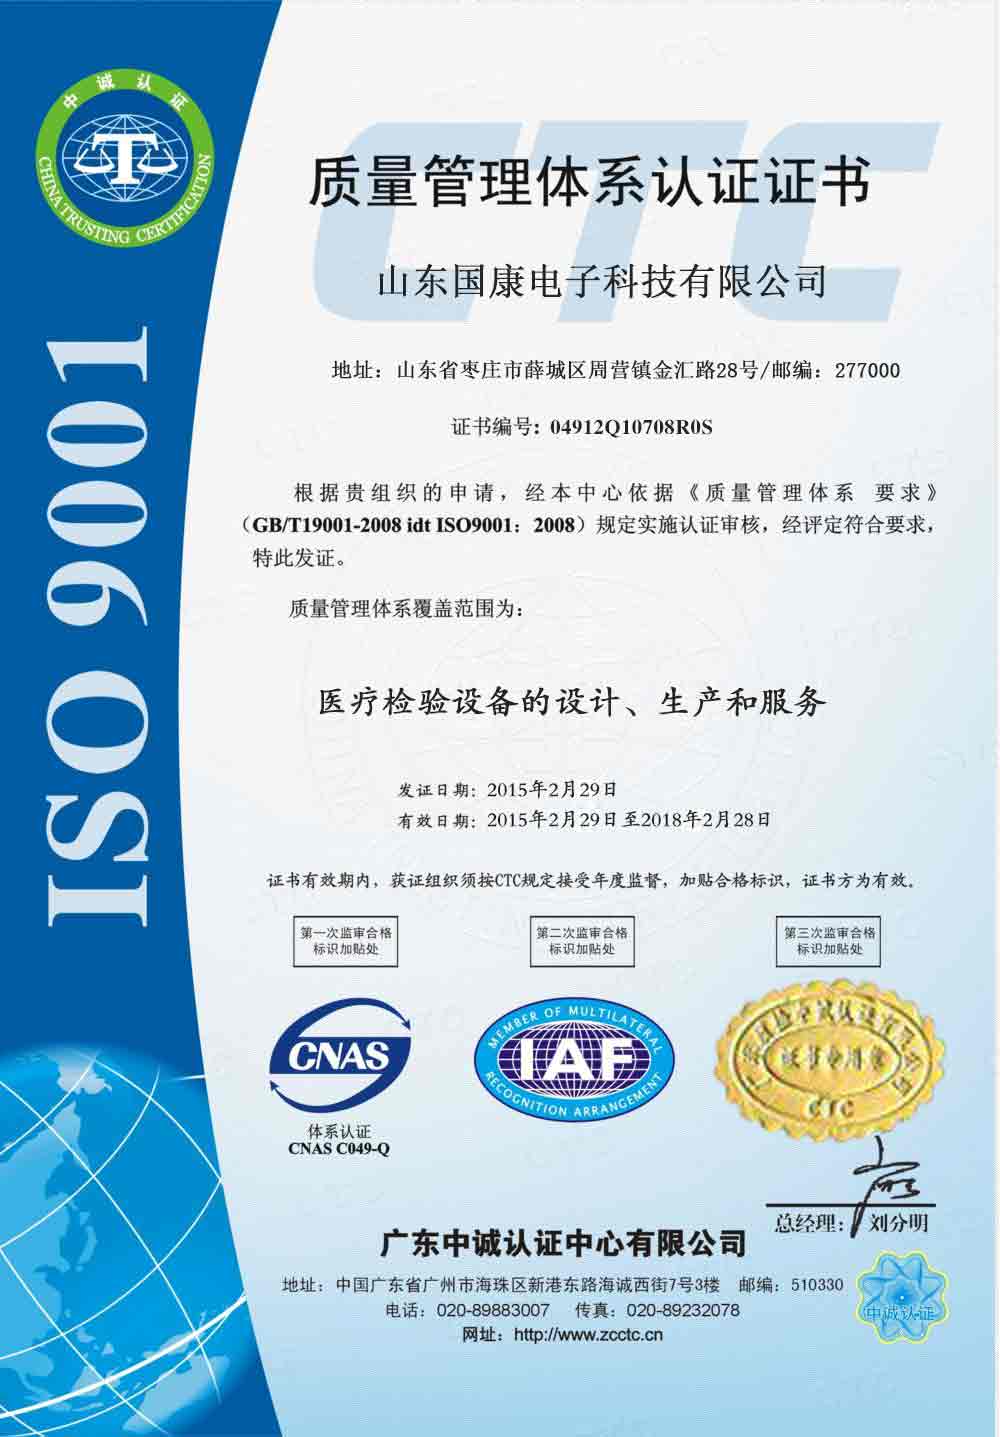 母乳分析仪IOS9001认证